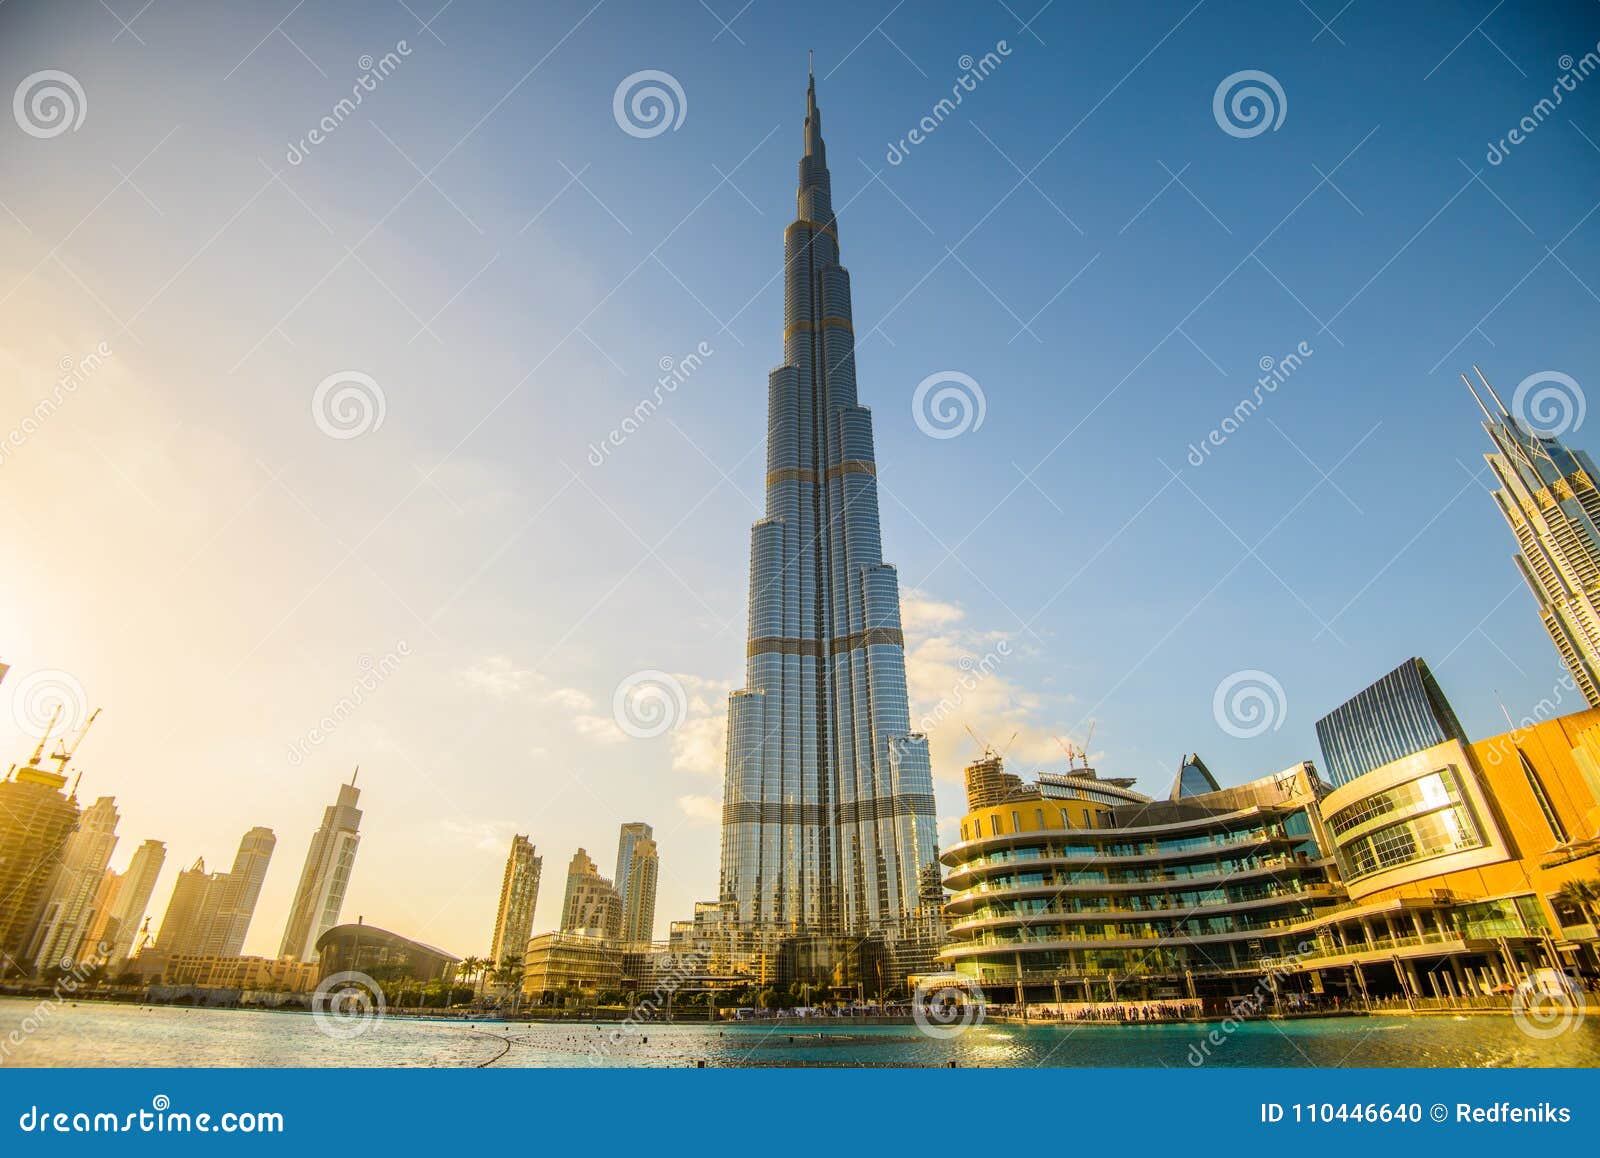 迪拜 阿联酋 18年1月05日 Burj哈利法塔这个摩天大楼是最高的人造结构编辑类图片 图片包括有都市风景 地标